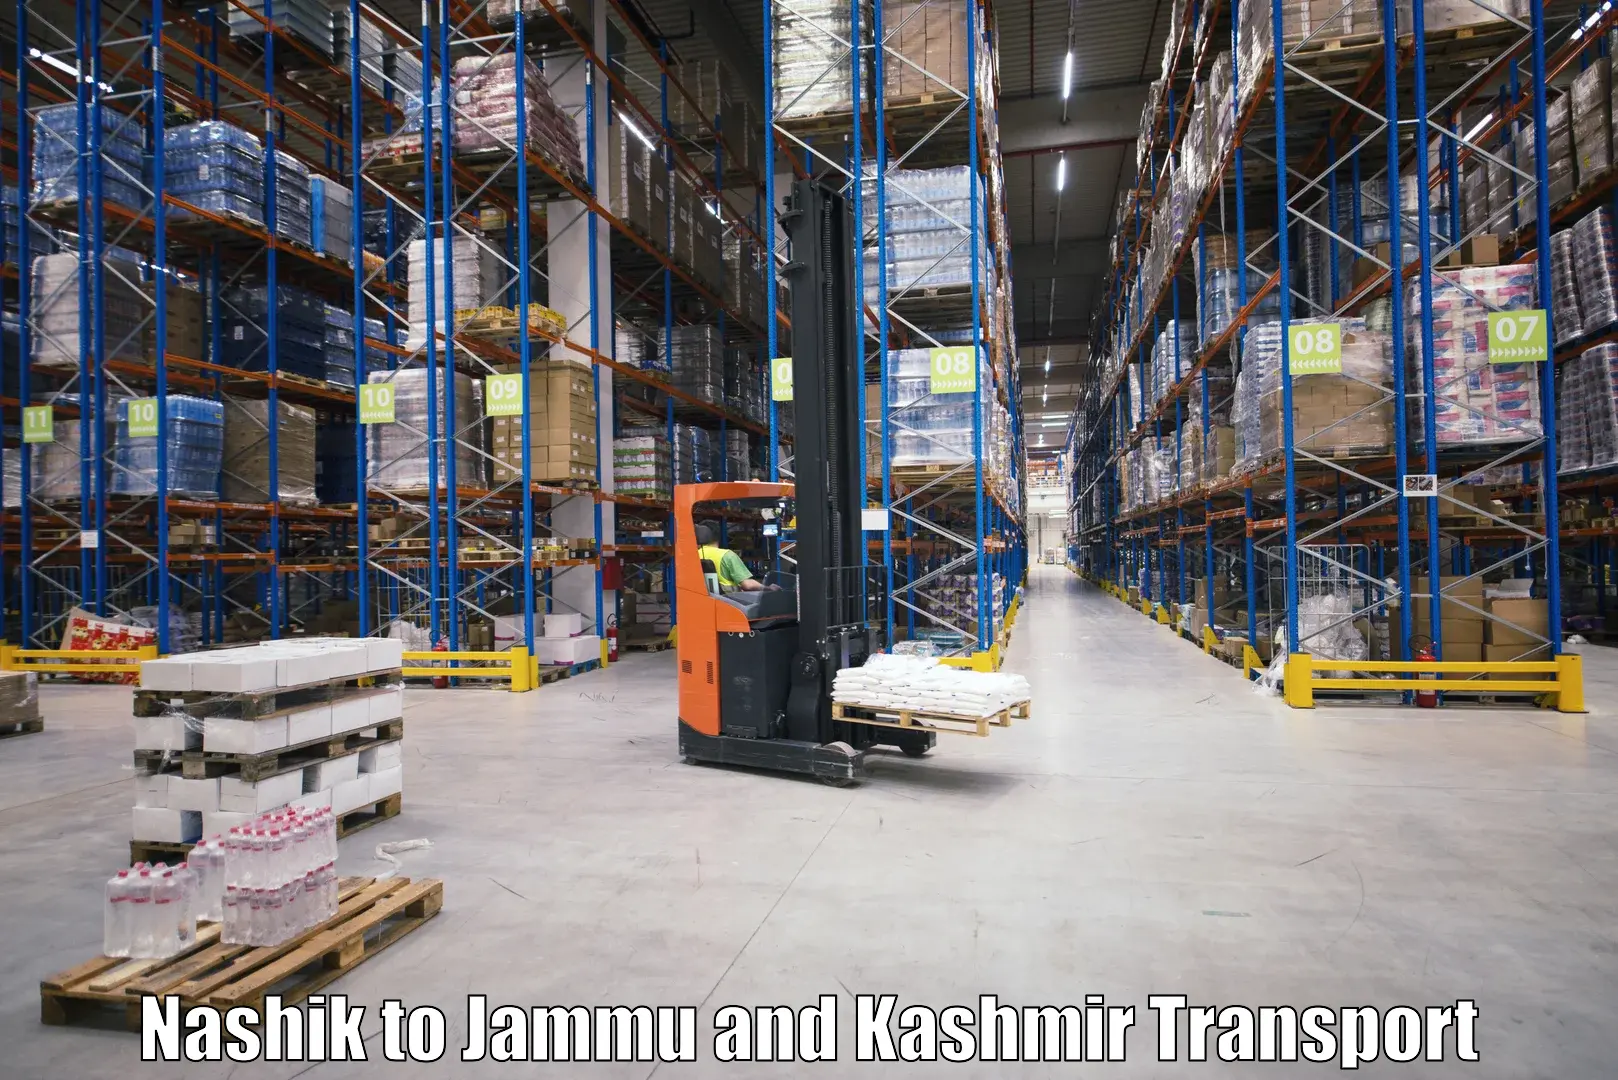 Furniture transport service Nashik to Bandipur